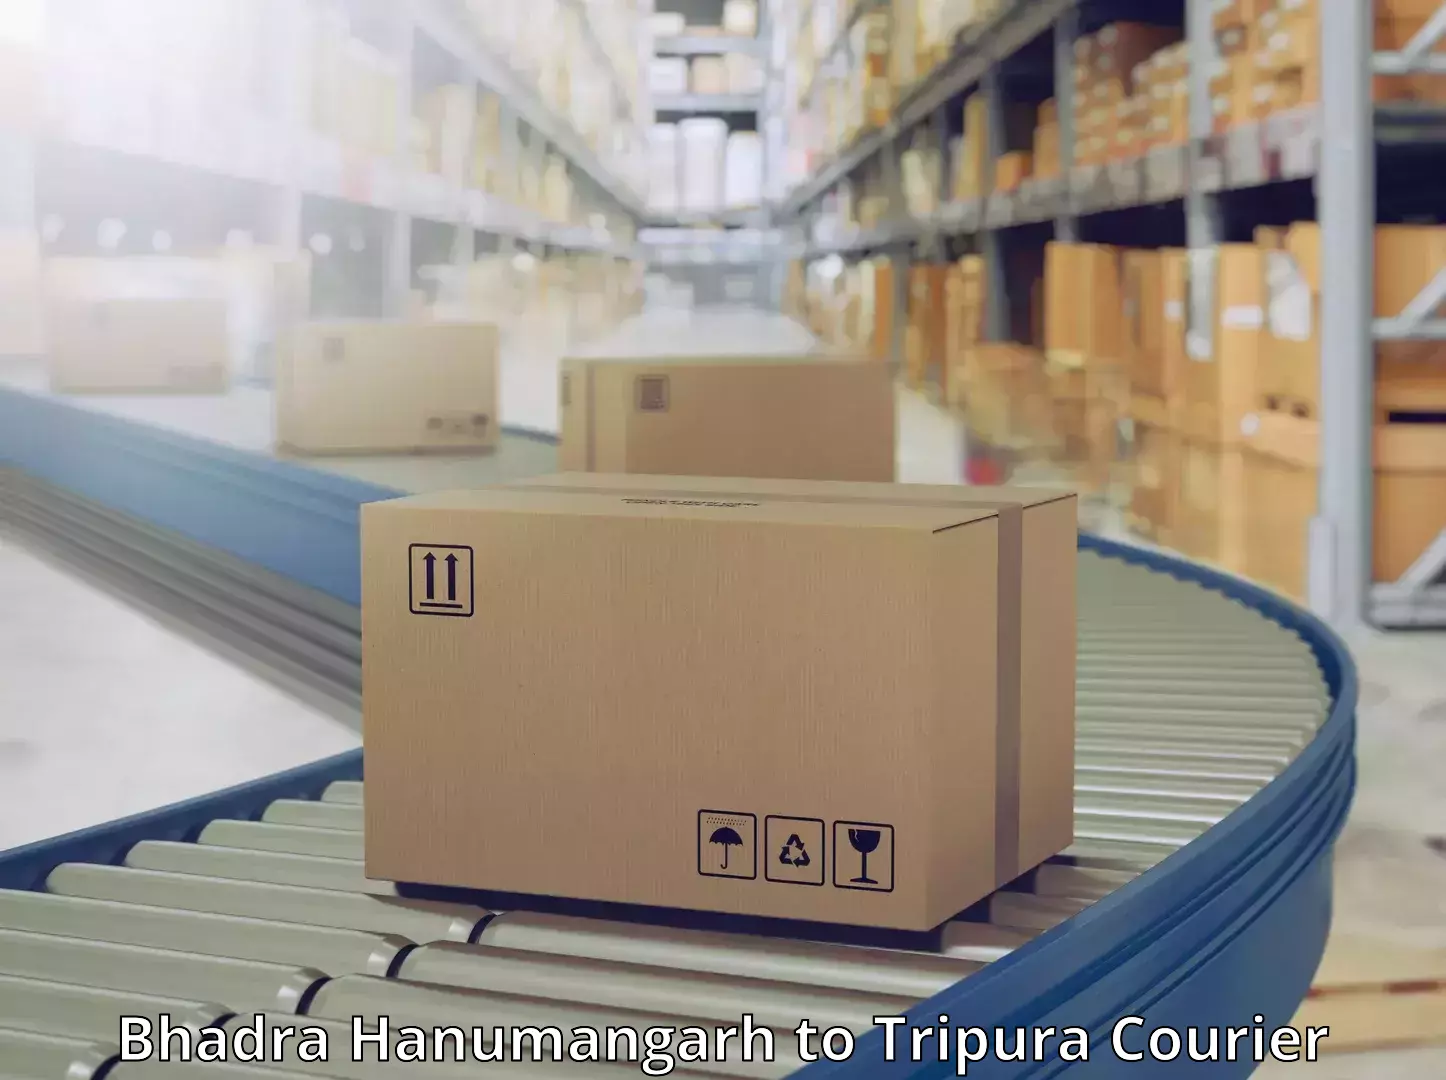 High-capacity shipping options Bhadra Hanumangarh to IIIT Agartala